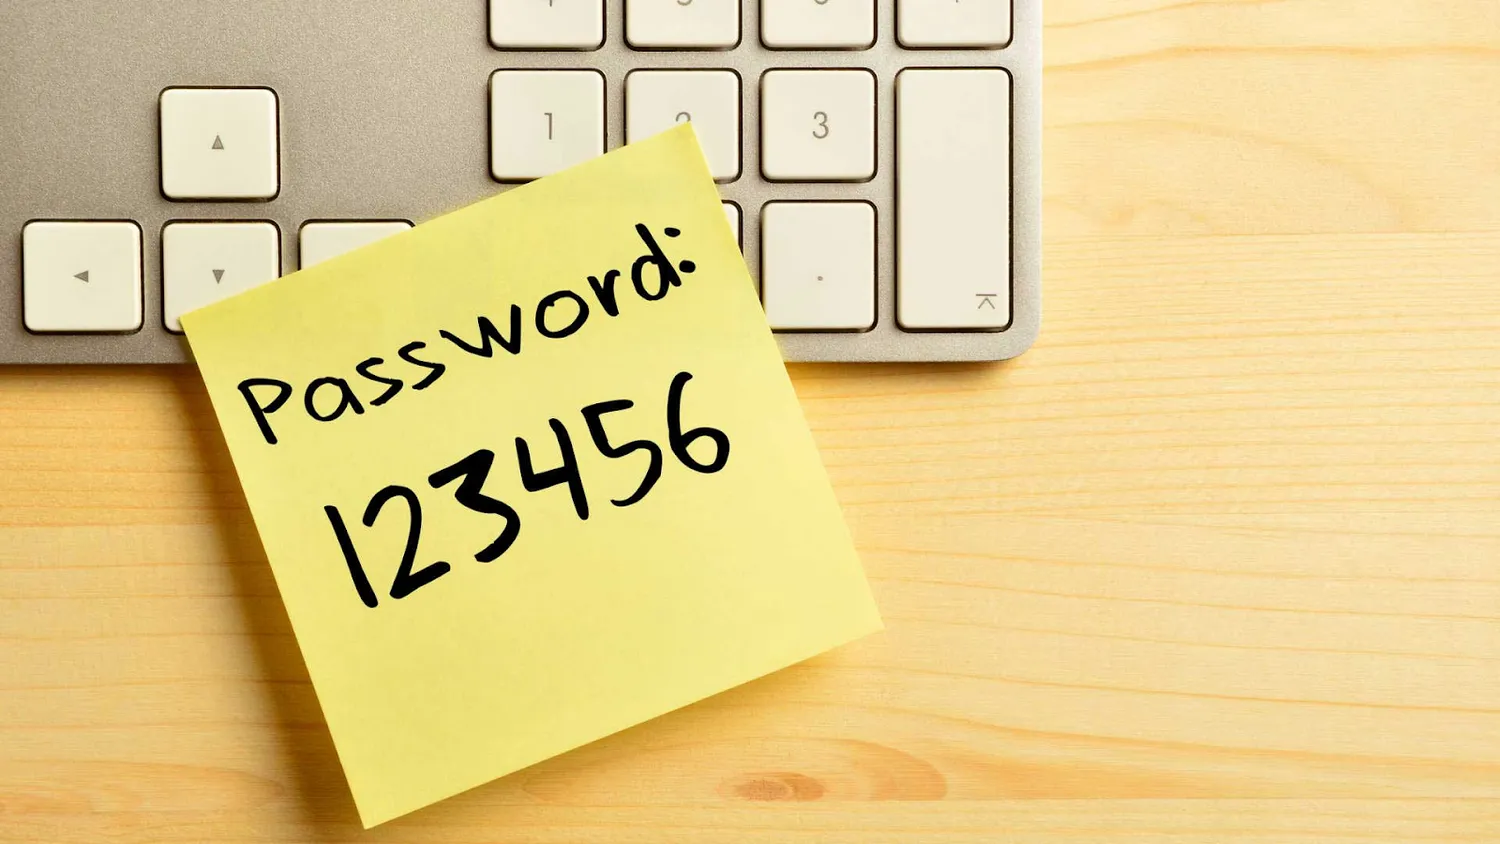 Урок по Excel: как быстро создать надежный пароль и защитить персональные данные